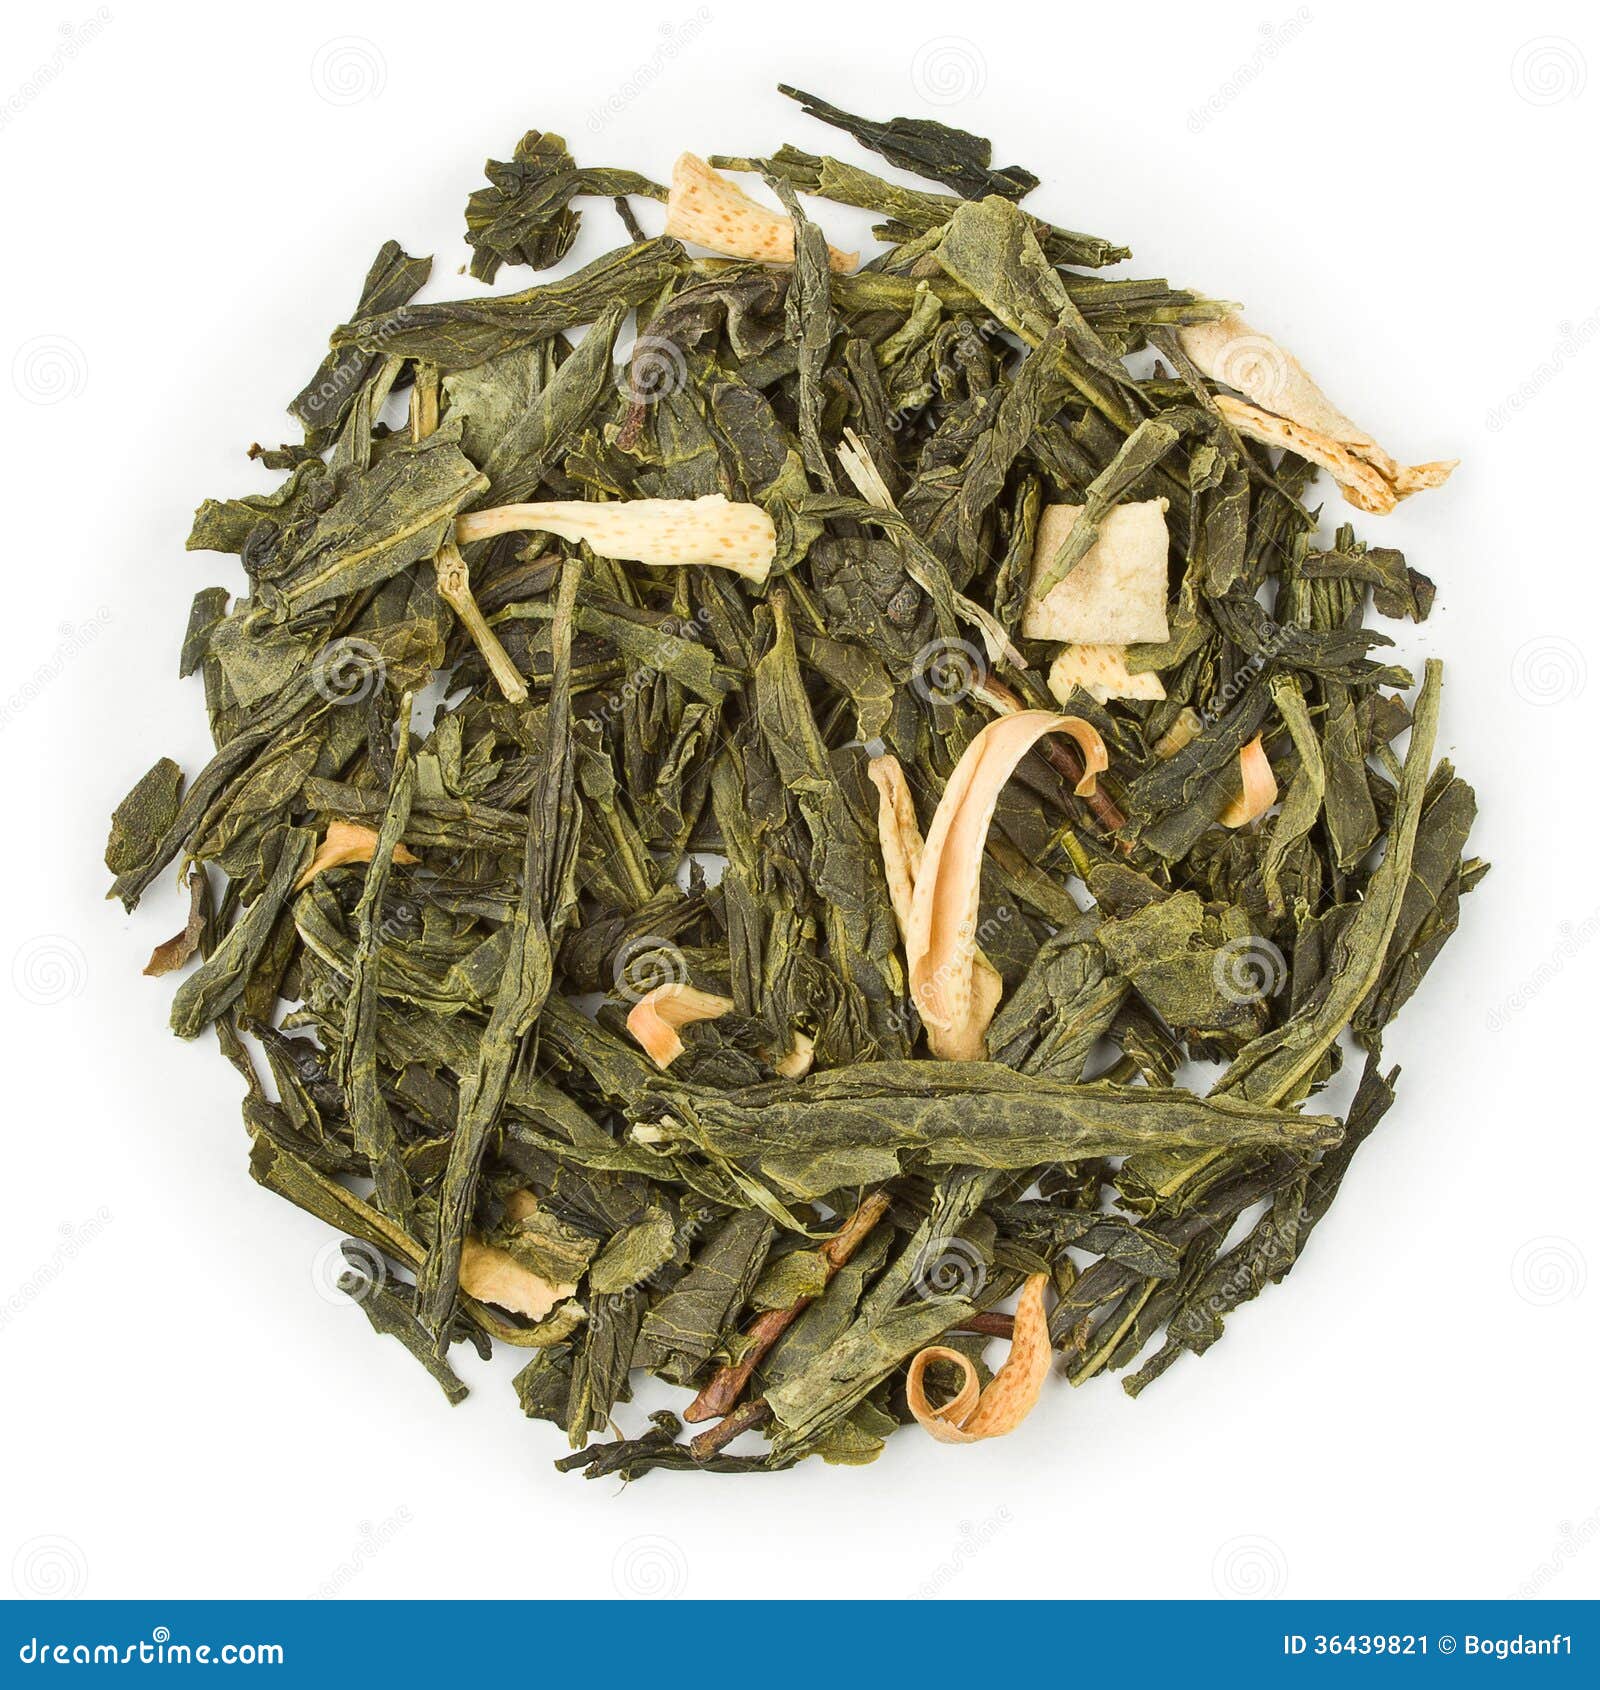 green tea sencha earl grey